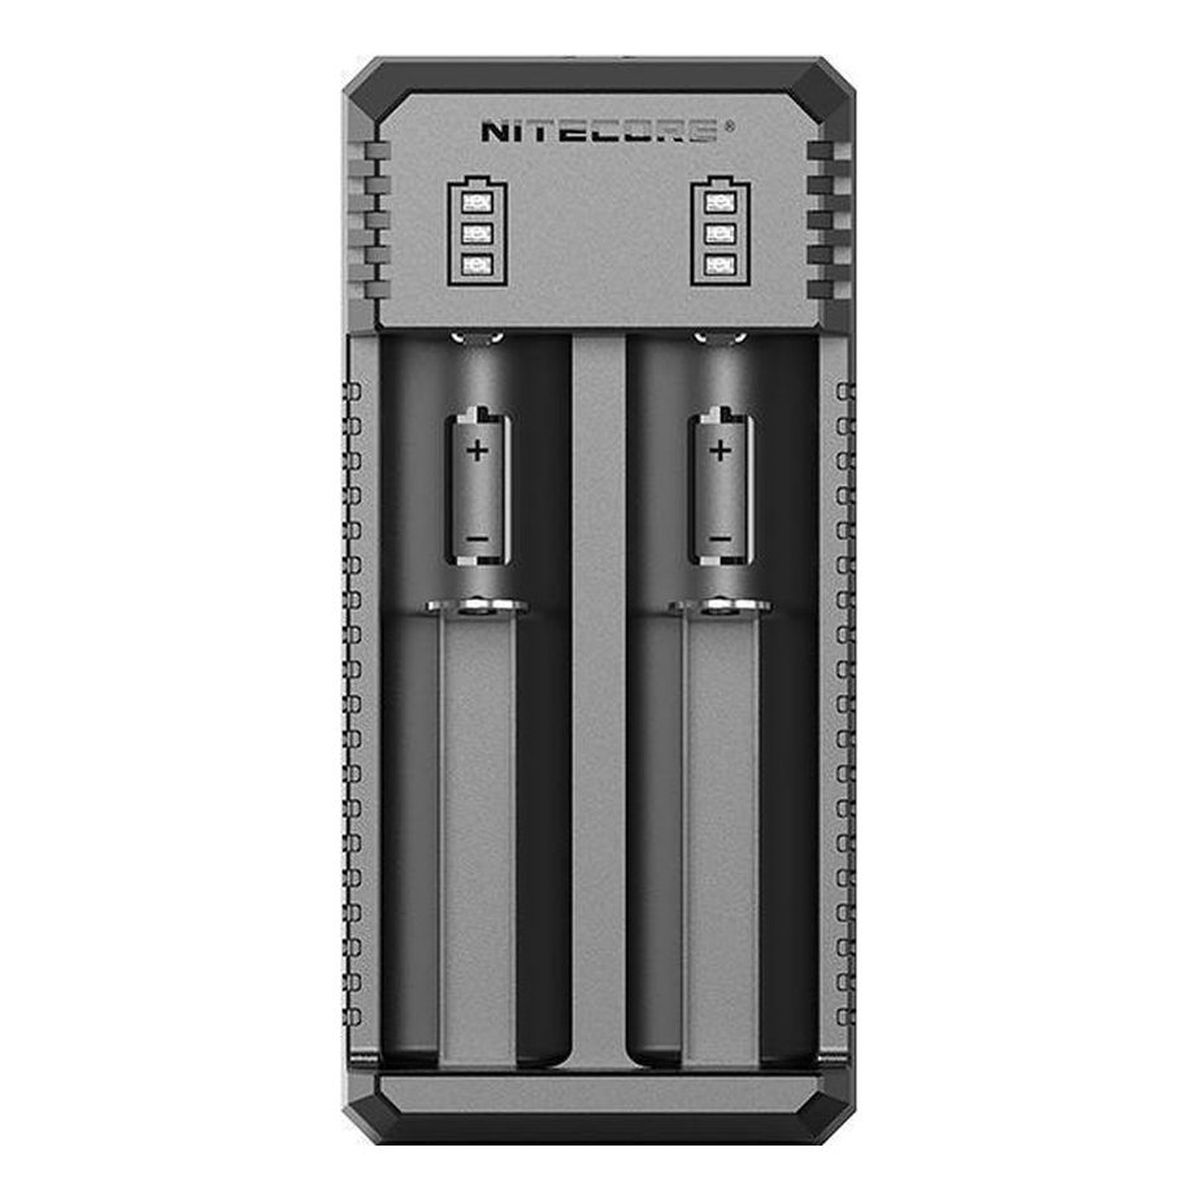 Nitecore UI2 - USB-Ladegerät mit 2 Steckplätzen